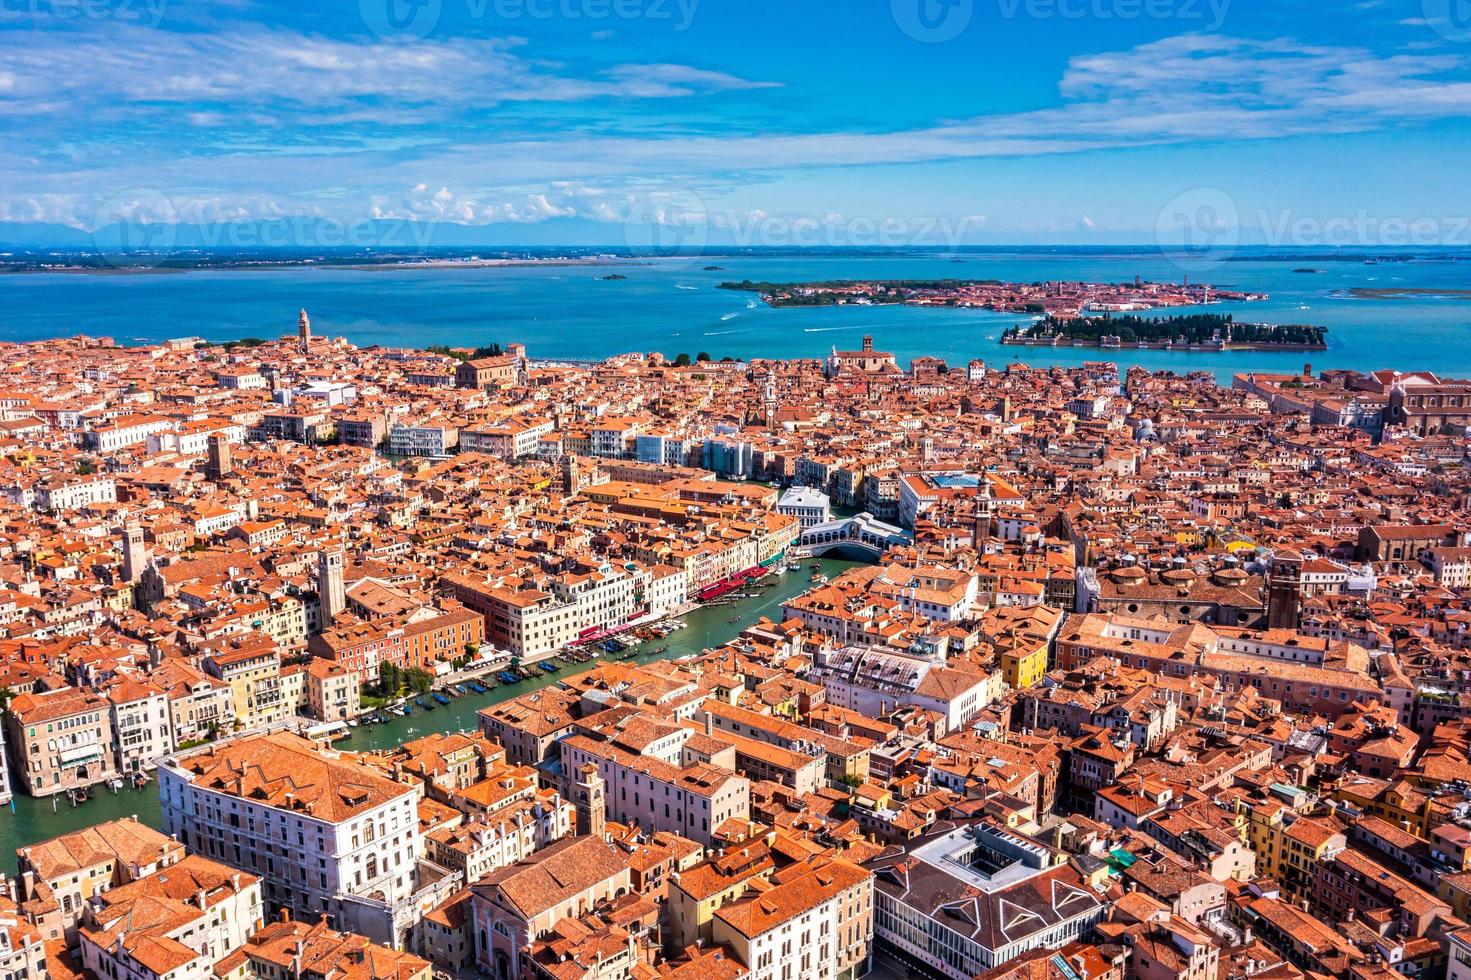 vista aérea de veneza perto da praça de são marcos foto